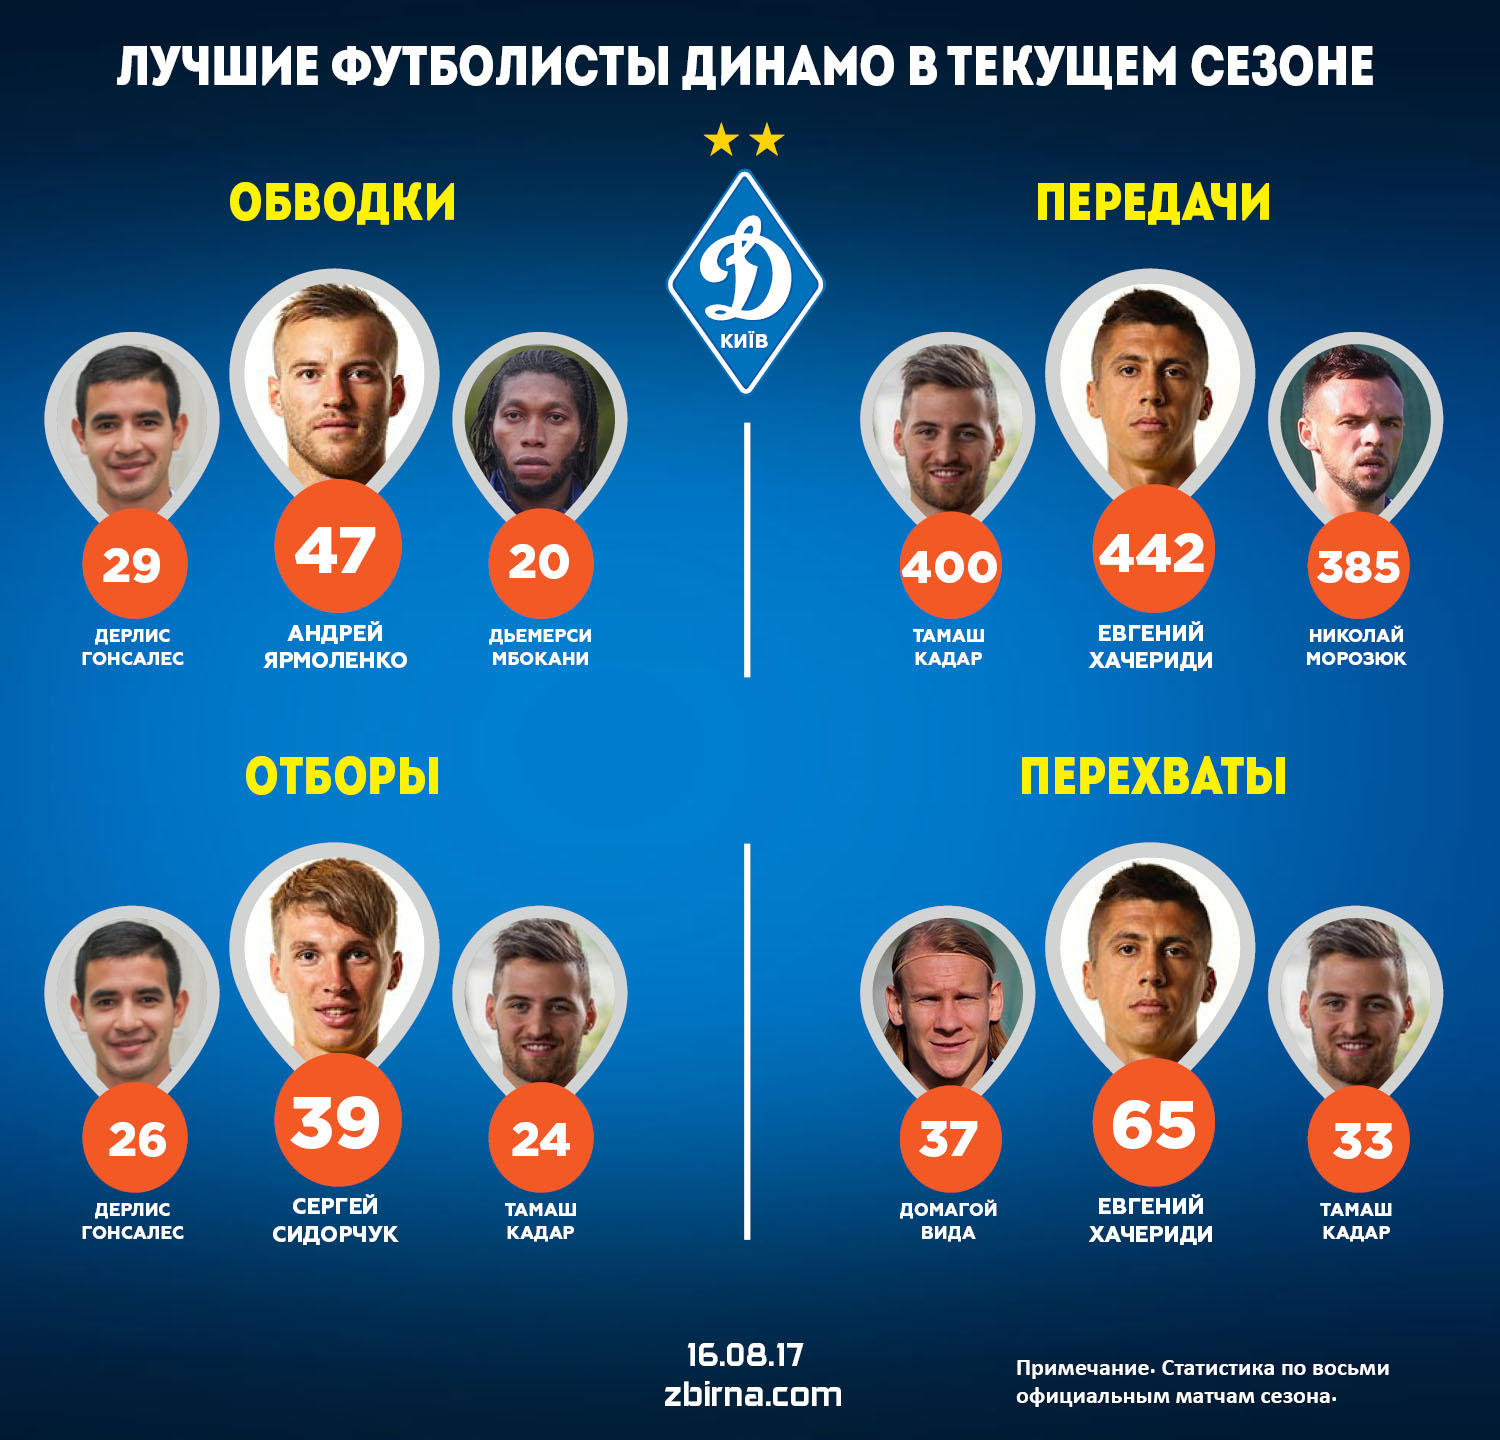 Экспертиза: Хачериди - самый полезный игрок "Динамо" в текущем сезоне - изображение 3